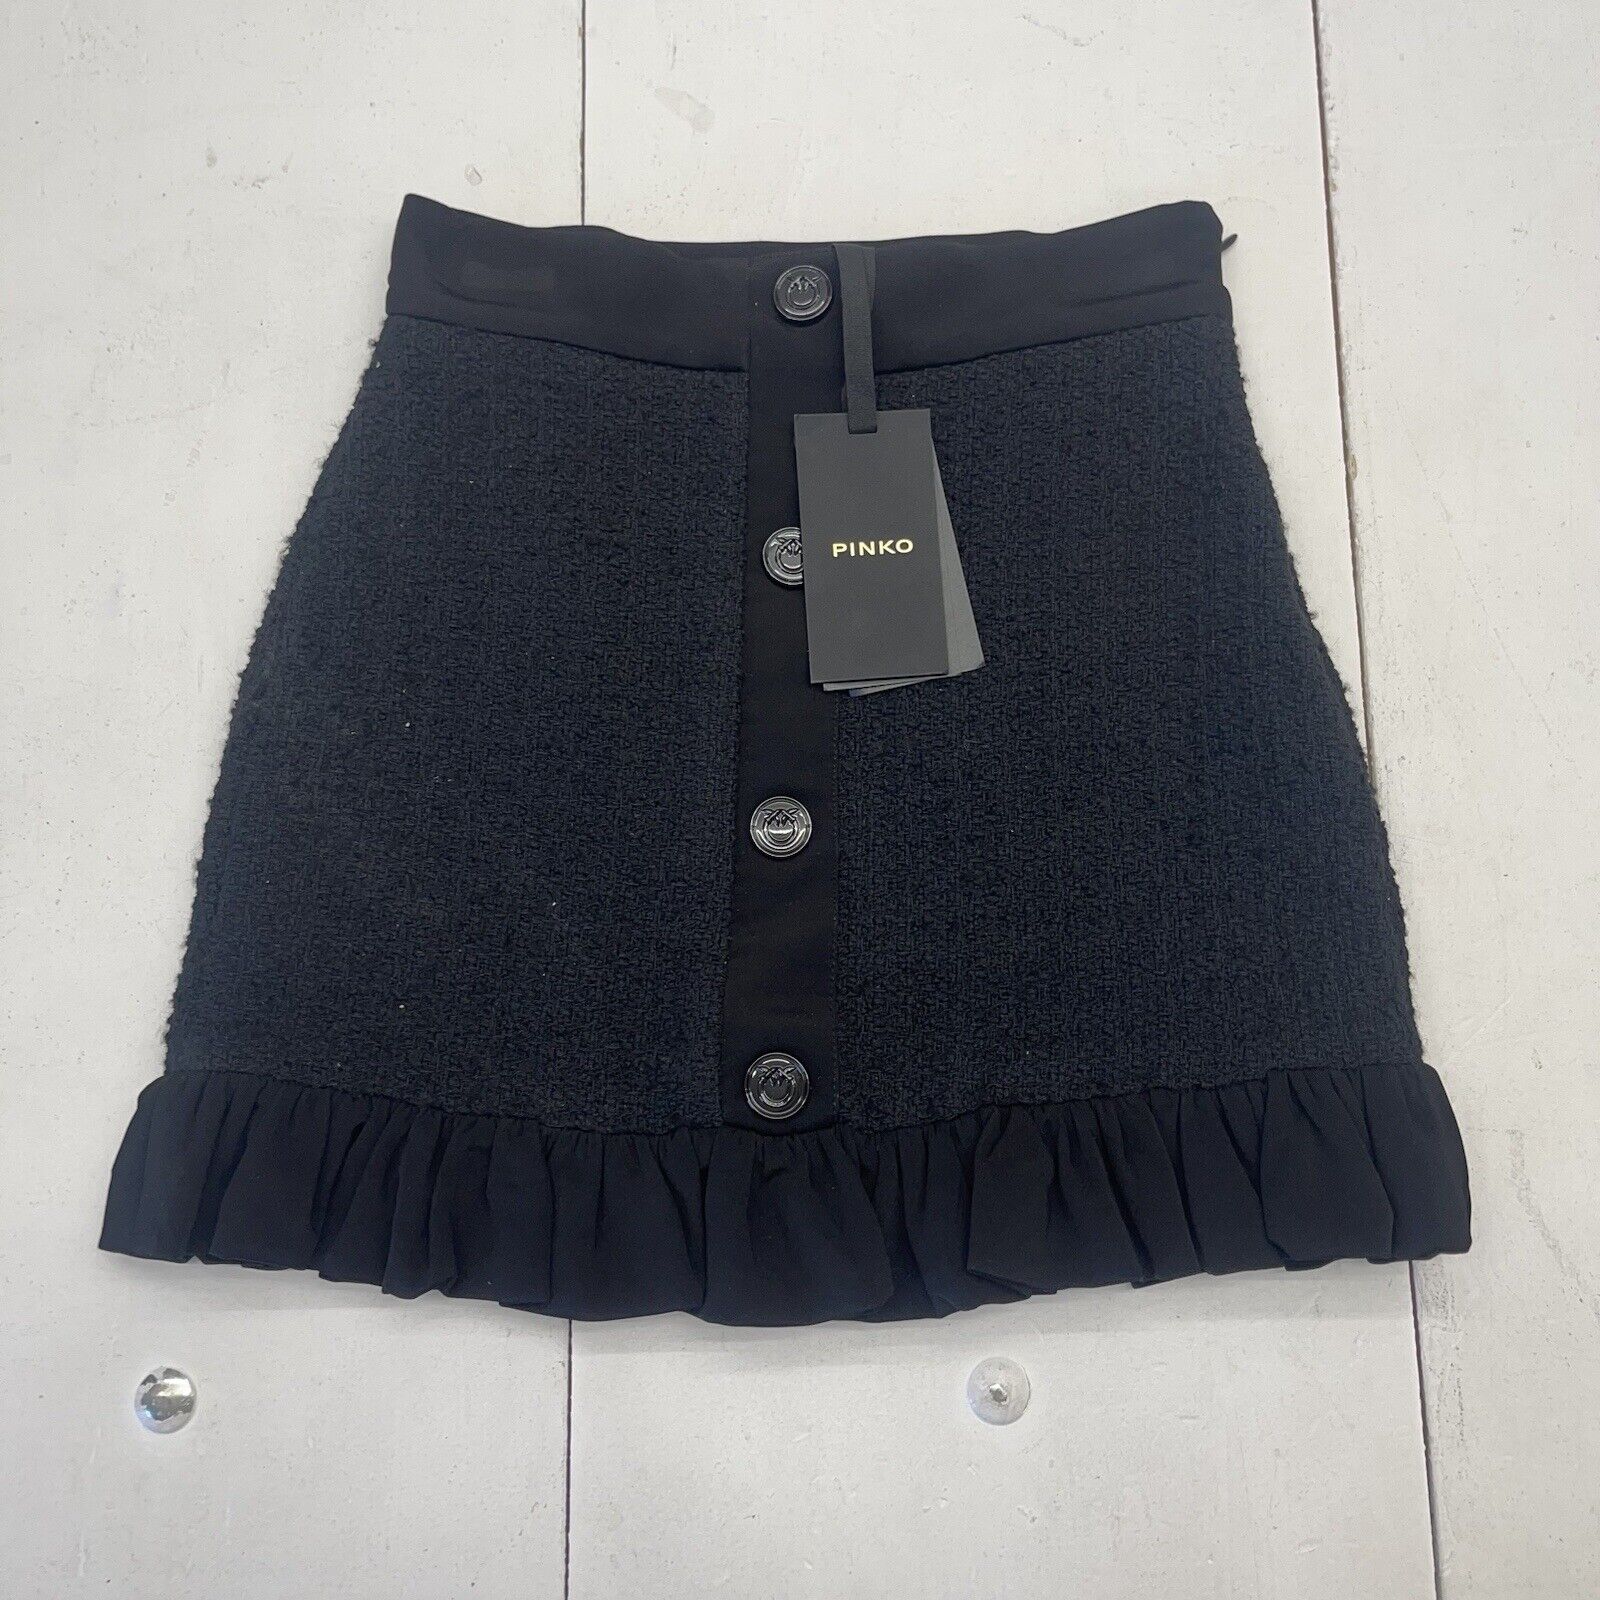 Pinko Black Grem Gonna Tweed Neoprene Mini Skirt Women’s Size 2 MSRP $328